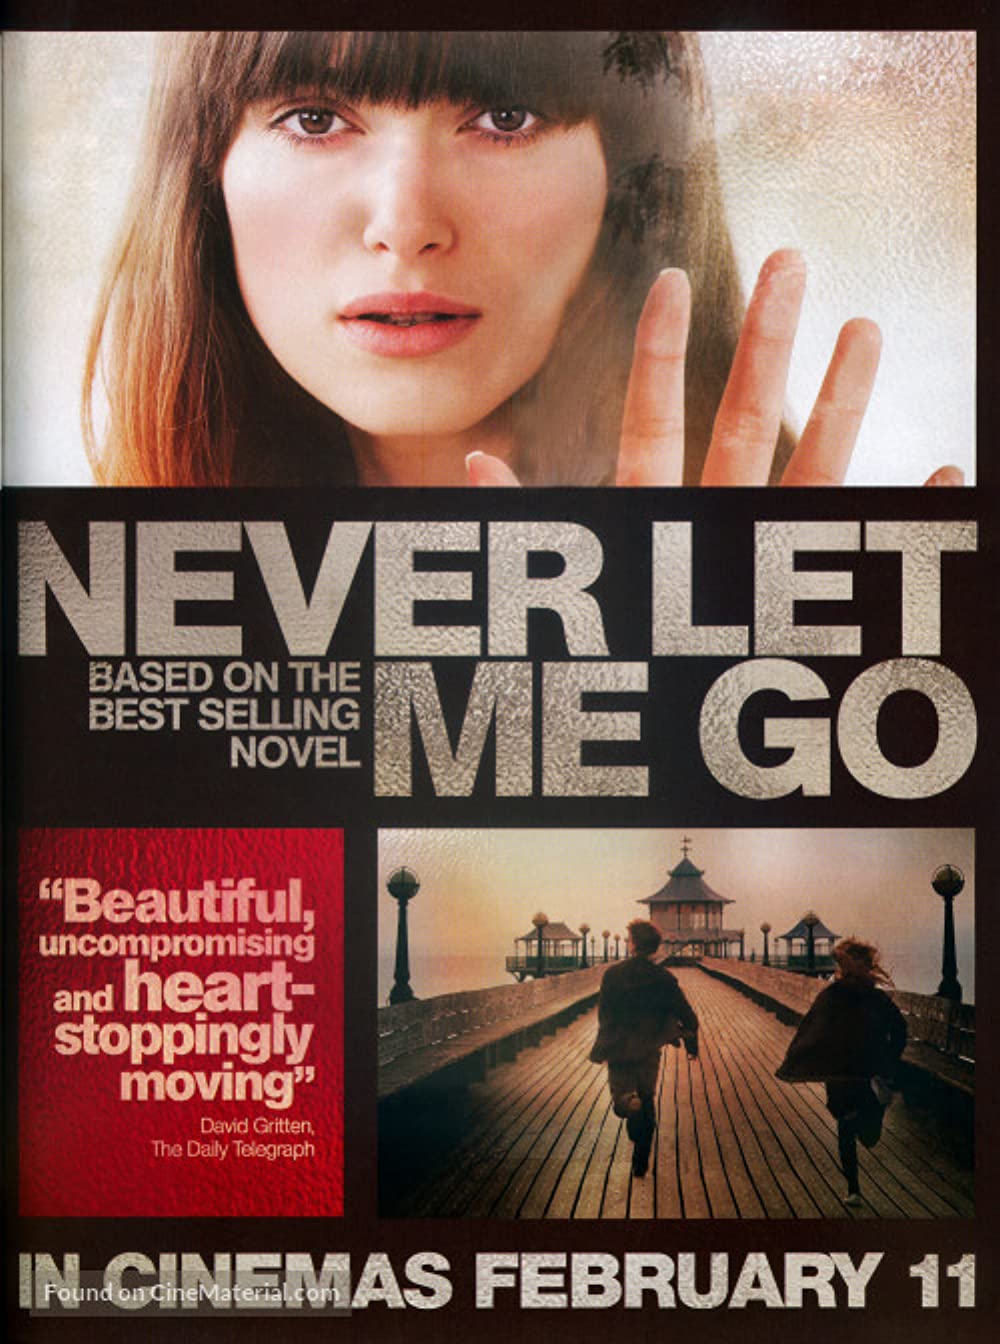 Μη μ&#39; αφήσεις ποτέ (2010) / Never Let Me Go (2010)